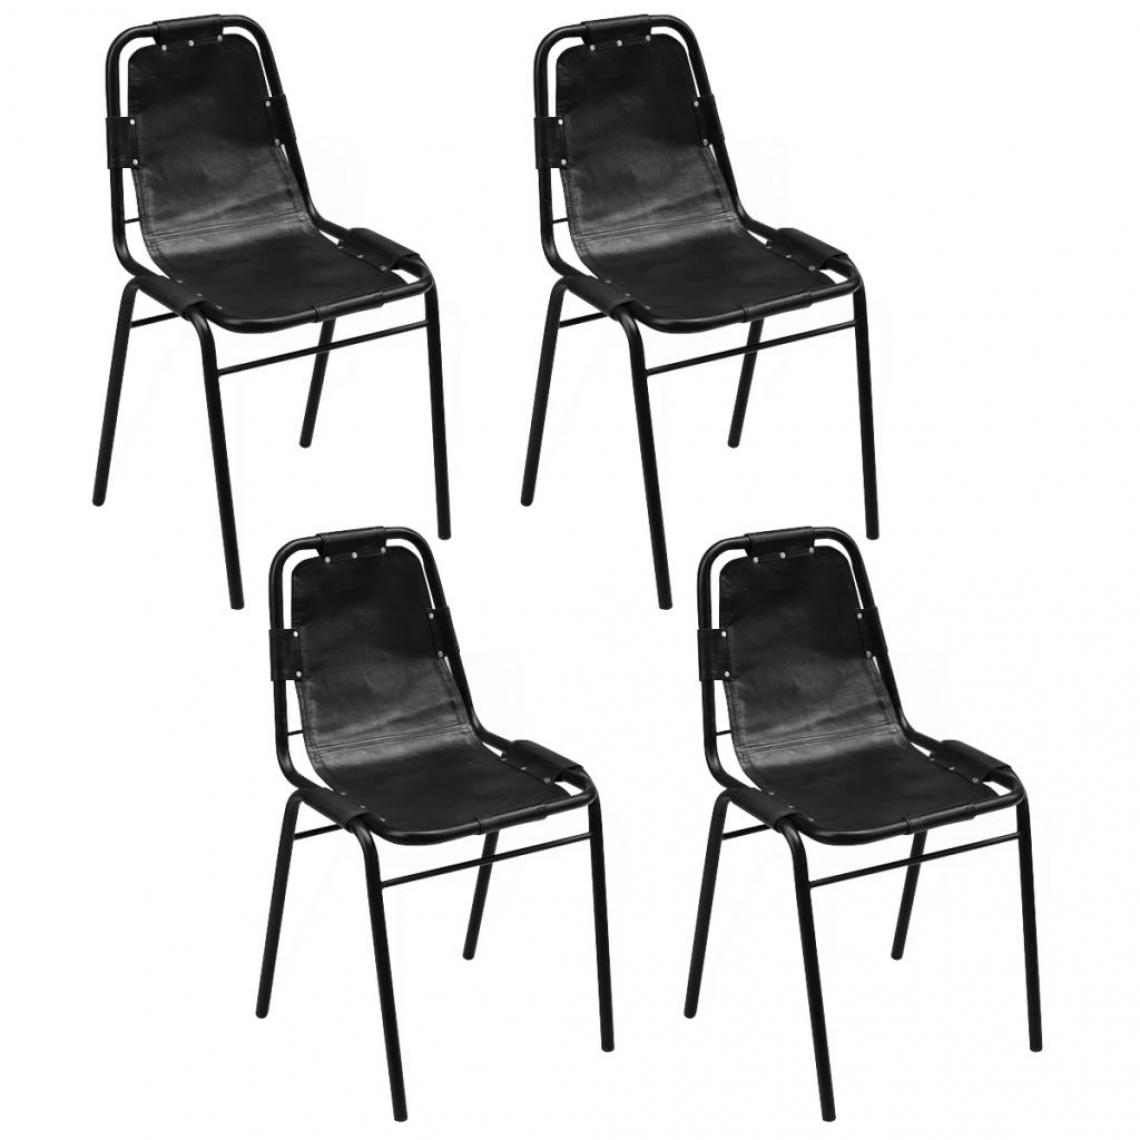 Decoshop26 - Lot de 4 chaises de salle à manger cuisine design rétro cuir véritable noir CDS021784 - Chaises